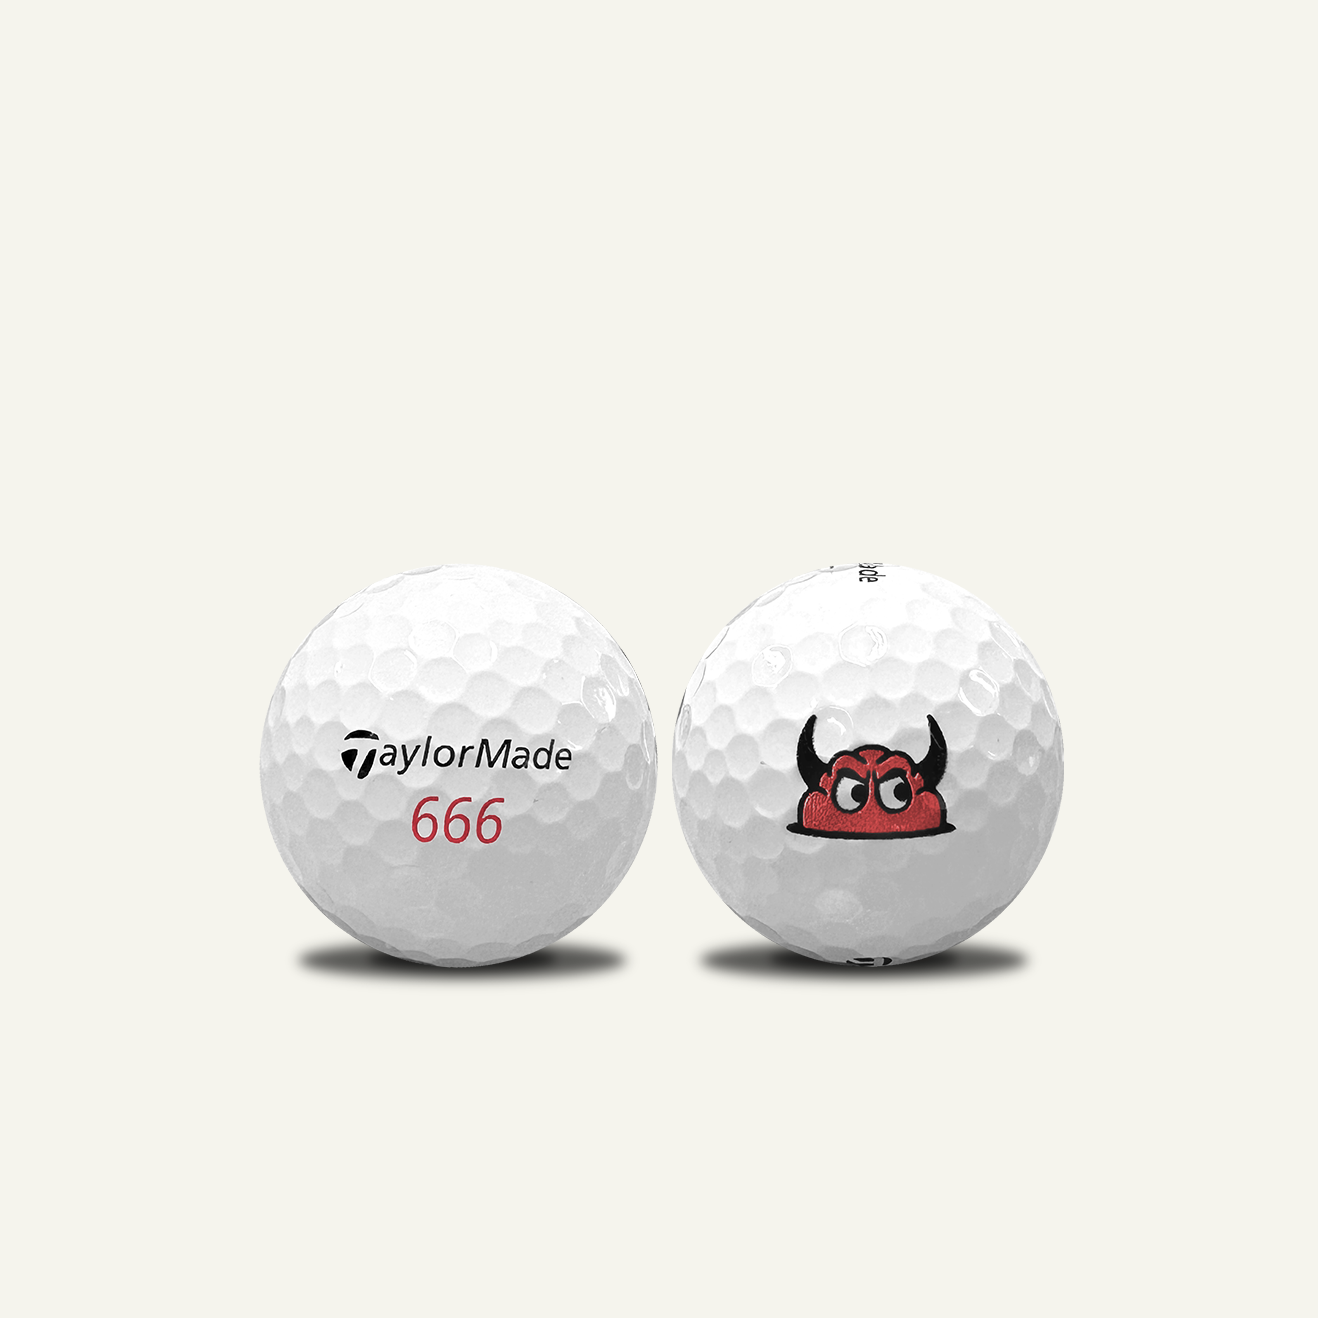 TaylorMade TP5x “666” Logo Ball (Individual)